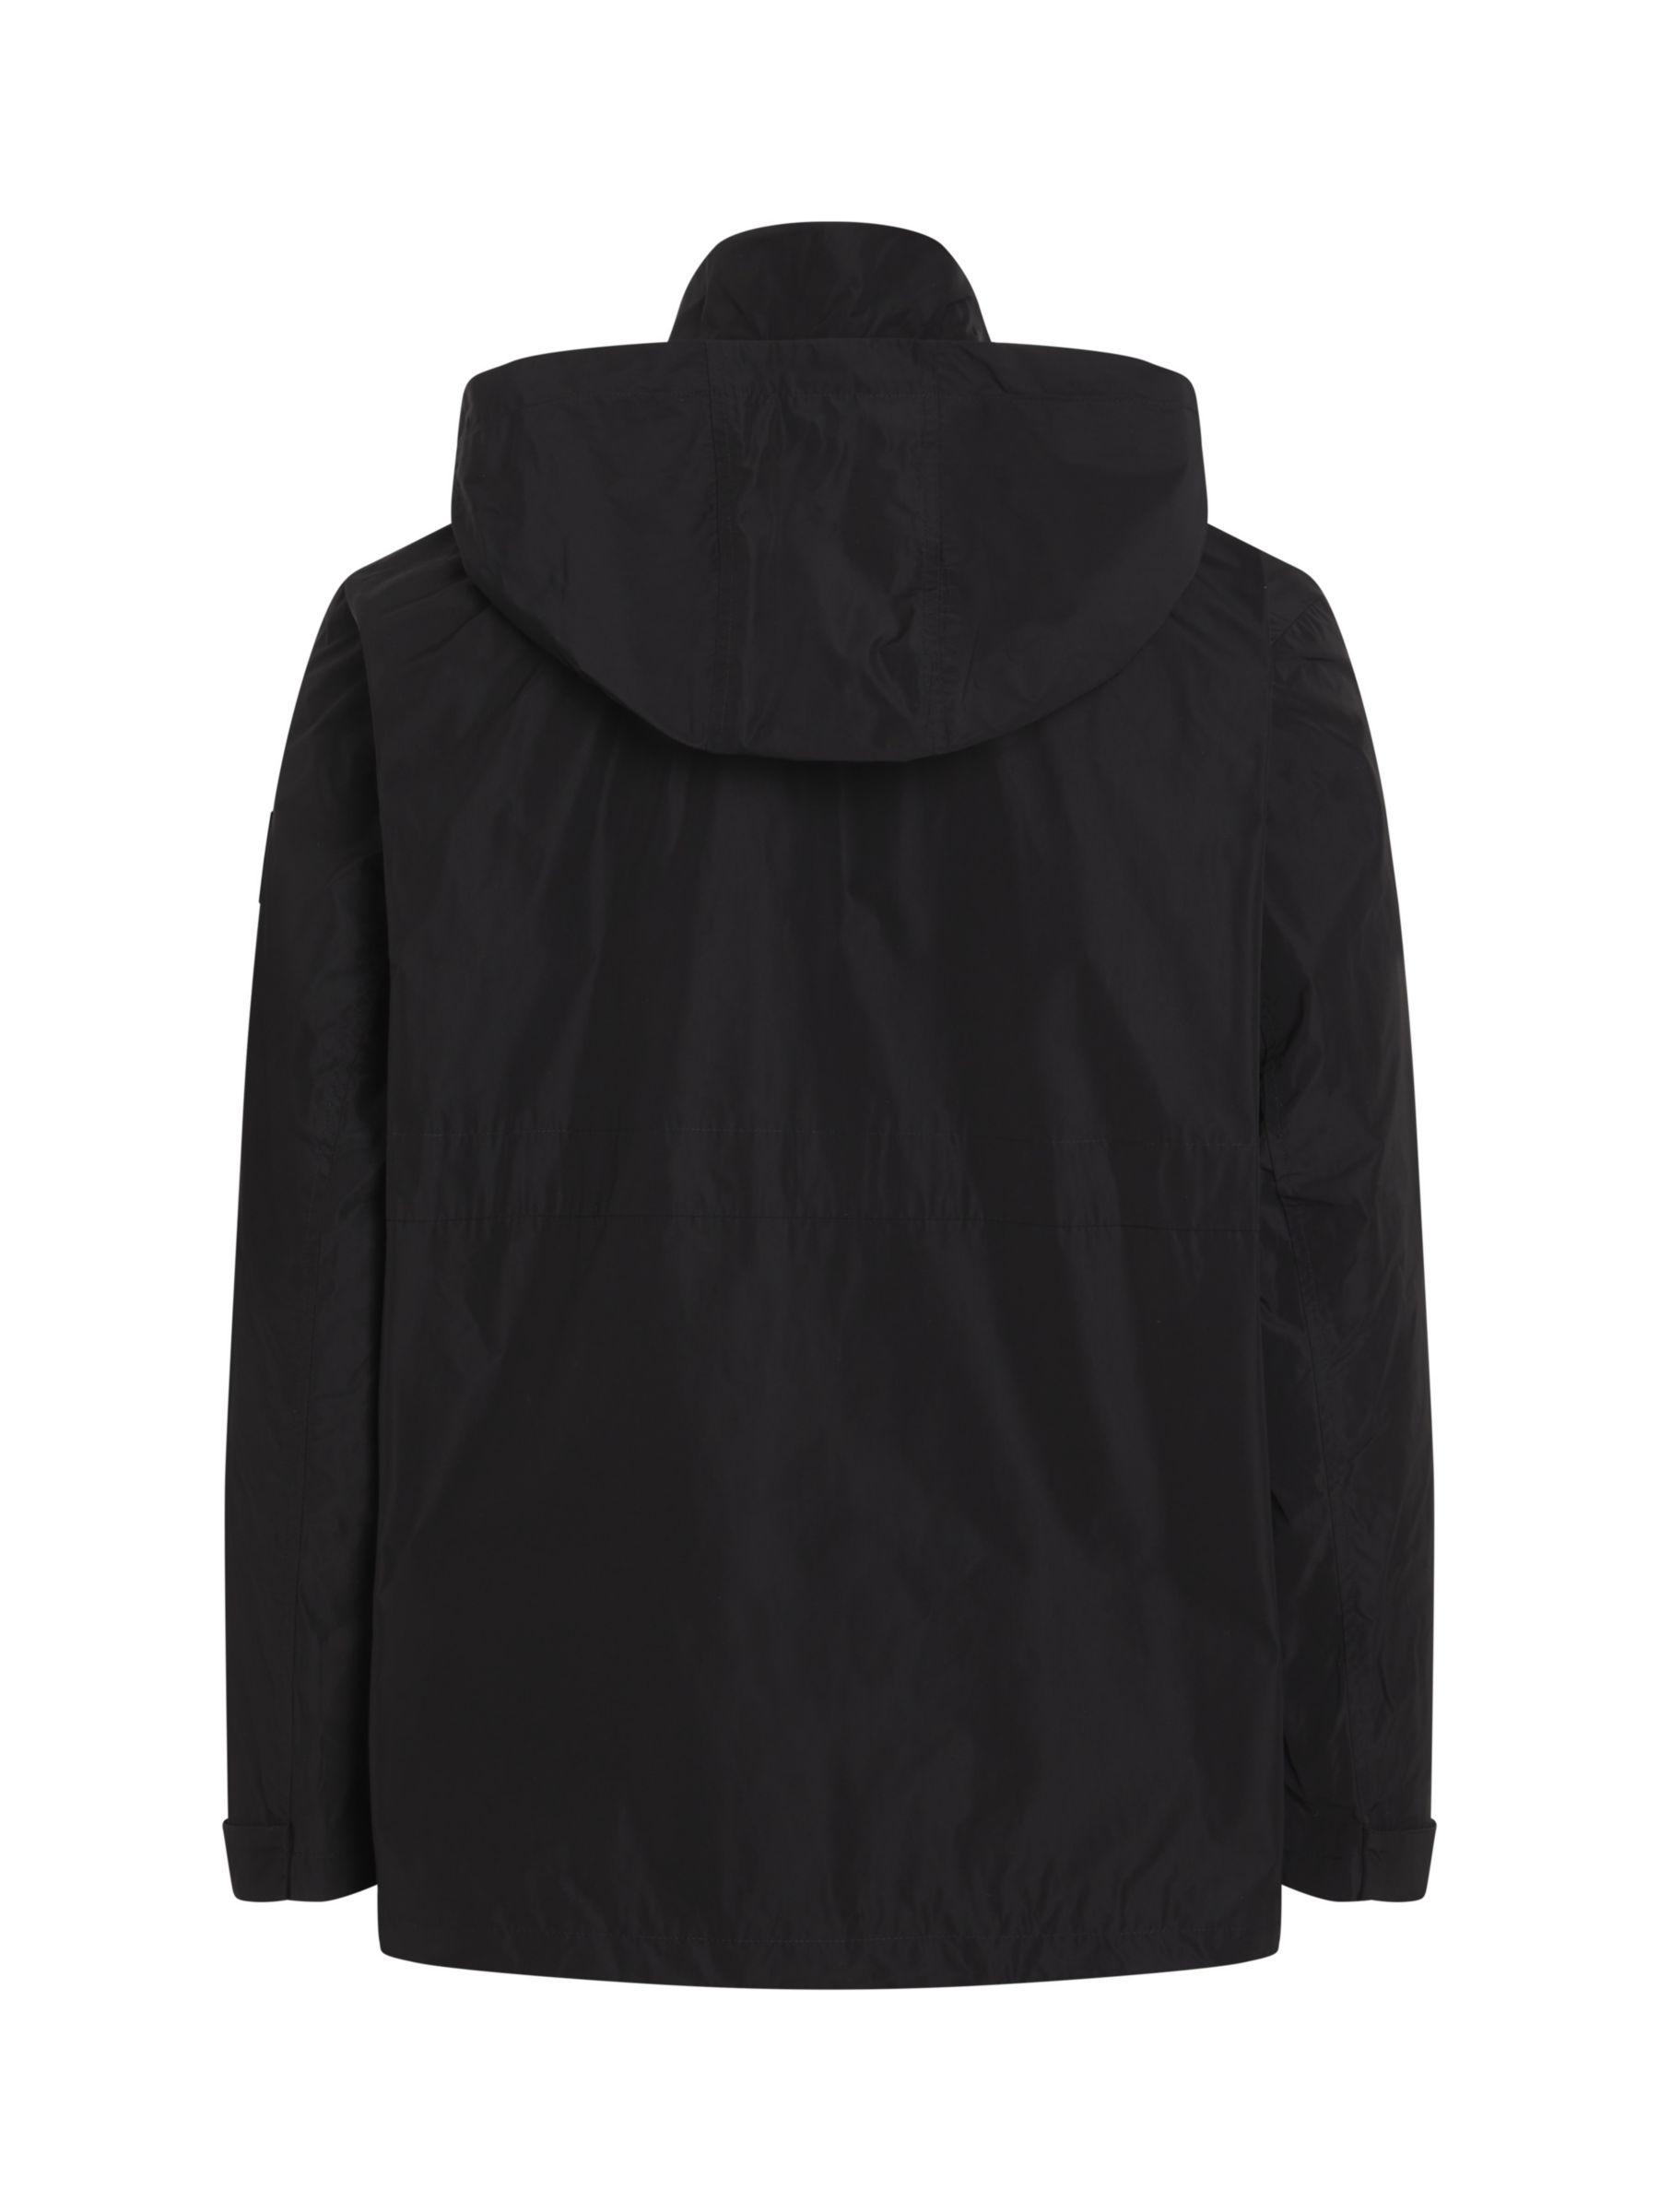 Calvin Klein Modern Hooded Windbreaker Jacket, Ck Black, L